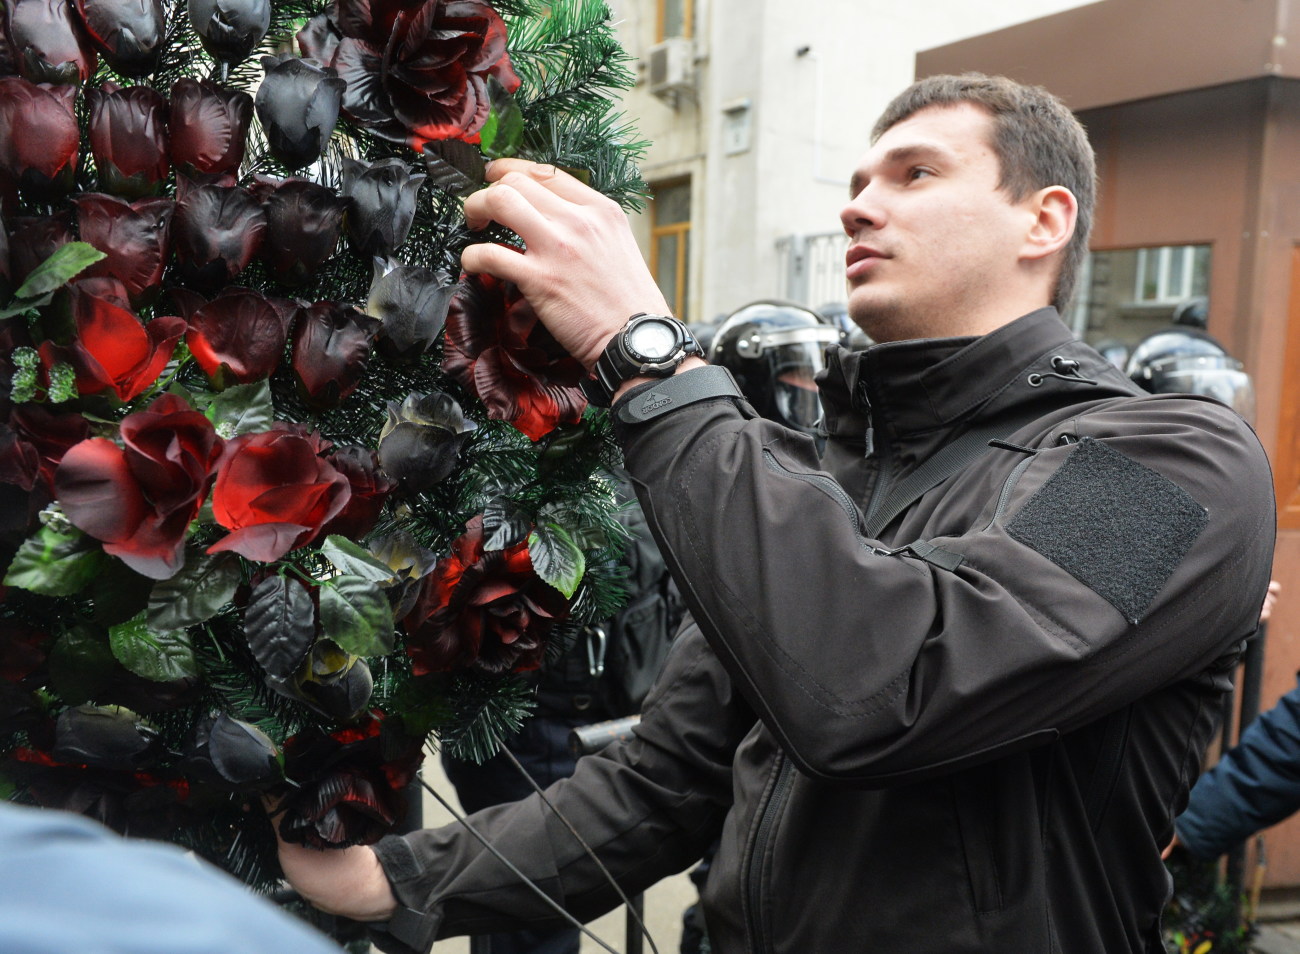 К администрации Порошенко принесли требования и похоронные венки